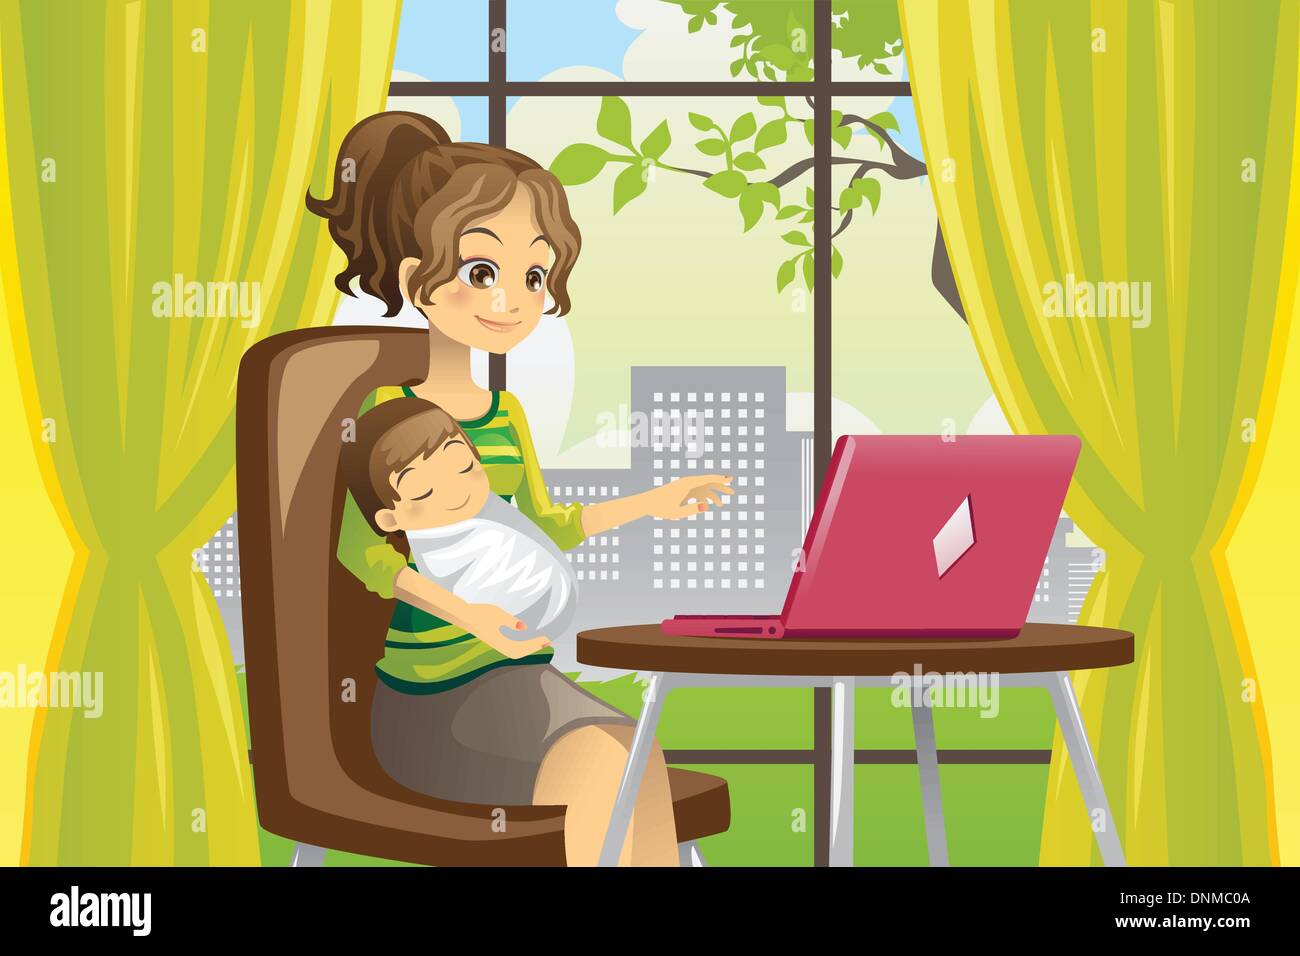 Un vecteur illustration d'une mère qui travaille sur un ordinateur portable tout en tenant un bébé Illustration de Vecteur